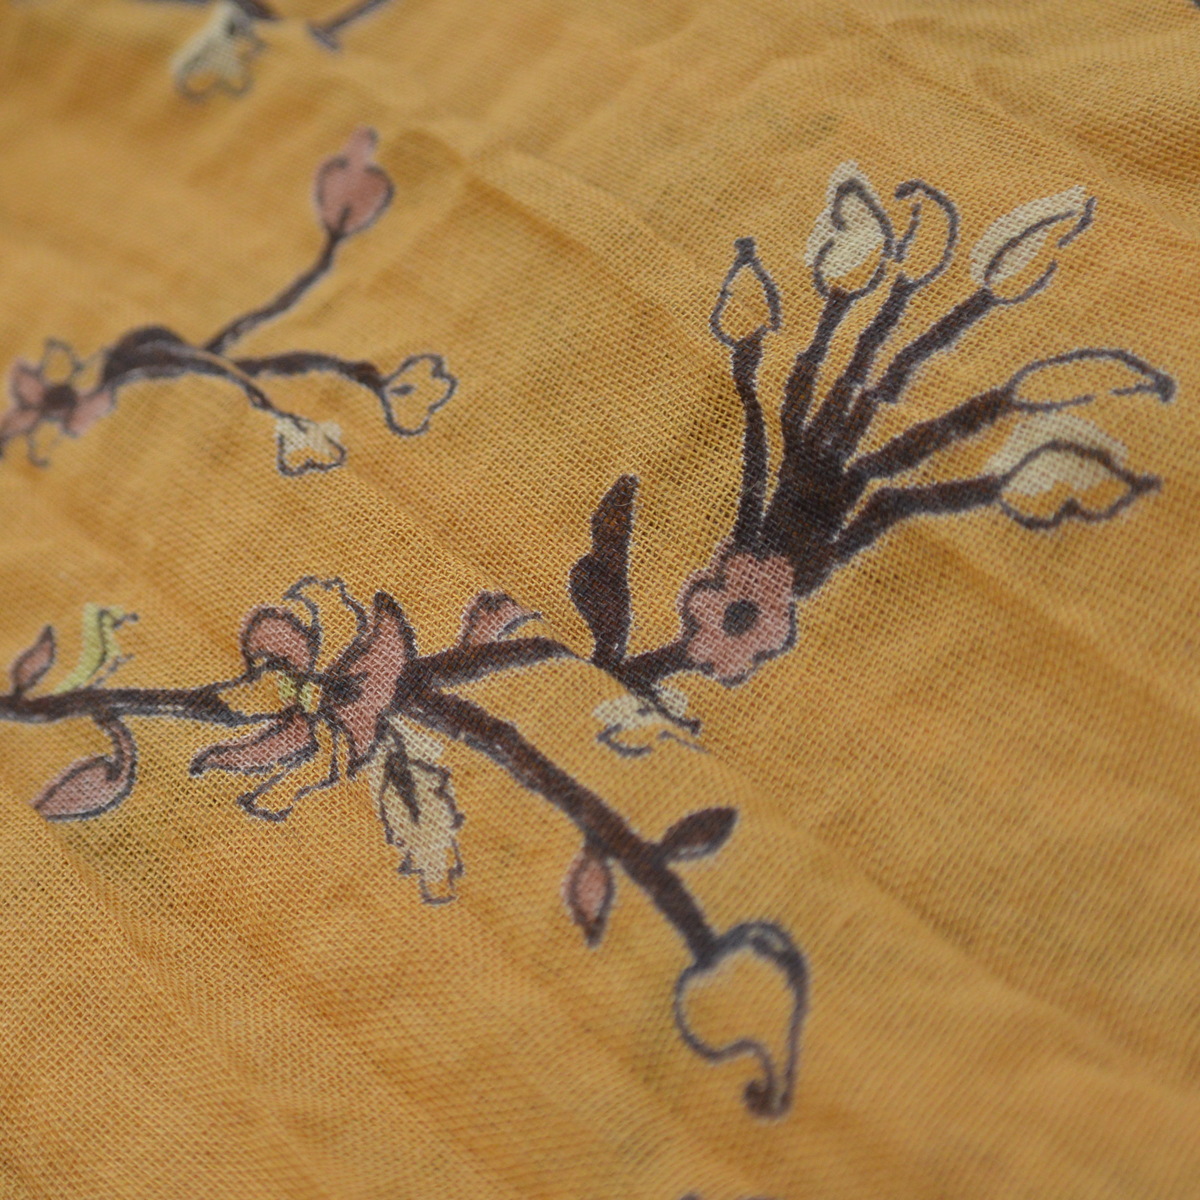 foulard zen ethic grande-etole-raj-voile-de-coton-110x180cm une idee cadeau chez ugo et lea   (8)